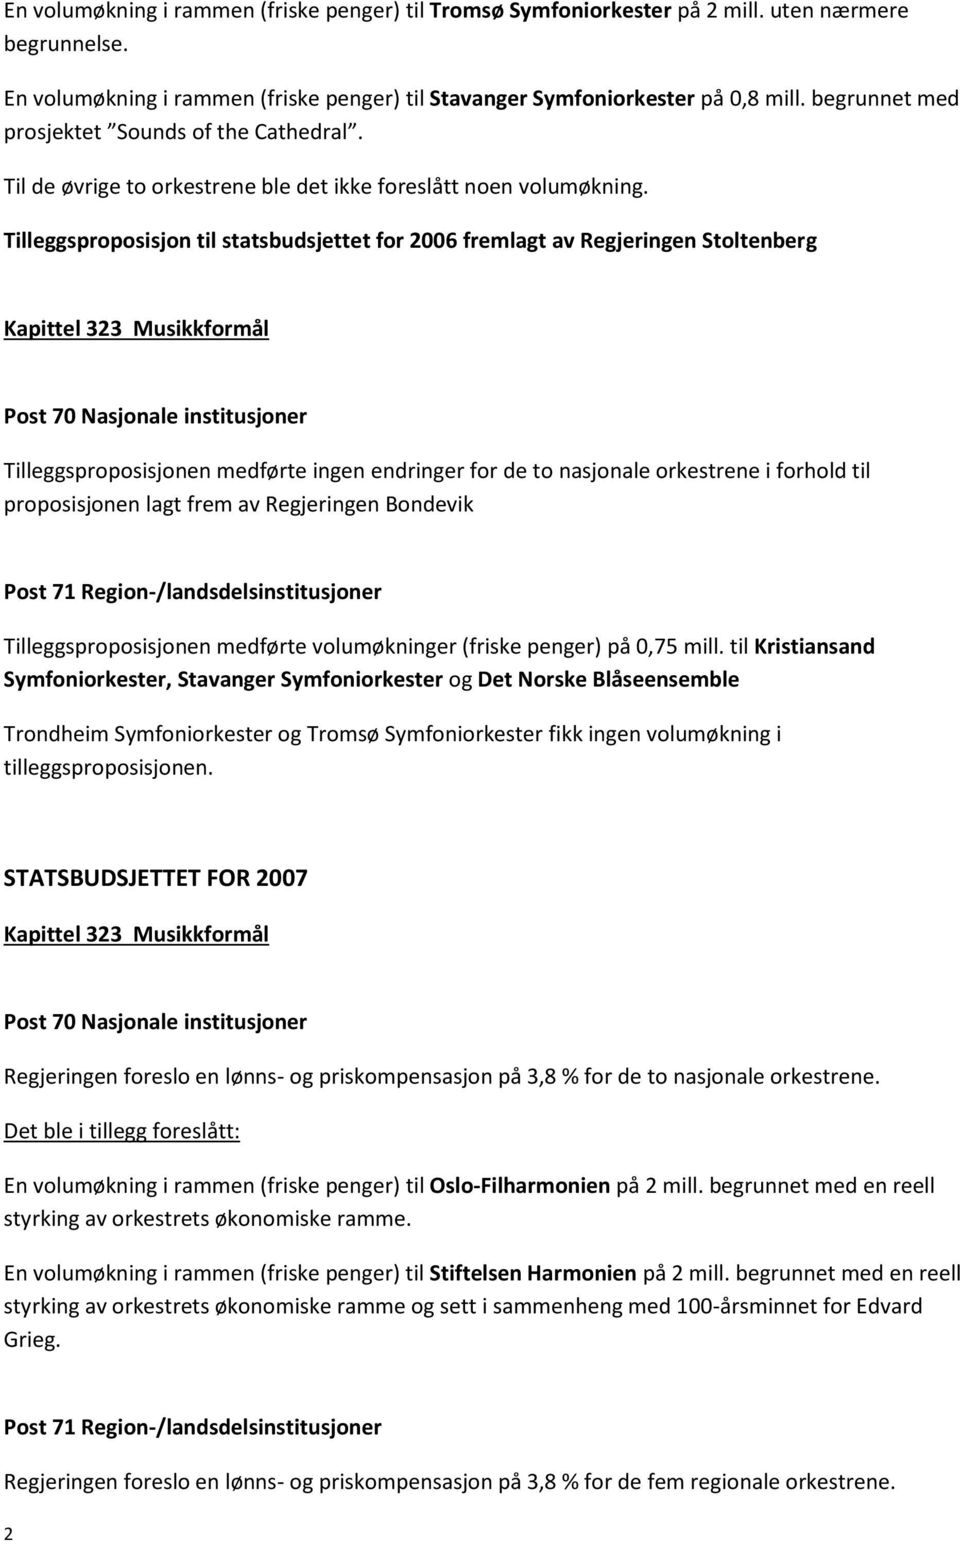 Tilleggsproposisjon til statsbudsjettet for 2006 fremlagt av Regjeringen Stoltenberg Tilleggsproposisjonen medførte ingen endringer for de to nasjonale orkestrene i forhold til proposisjonen lagt